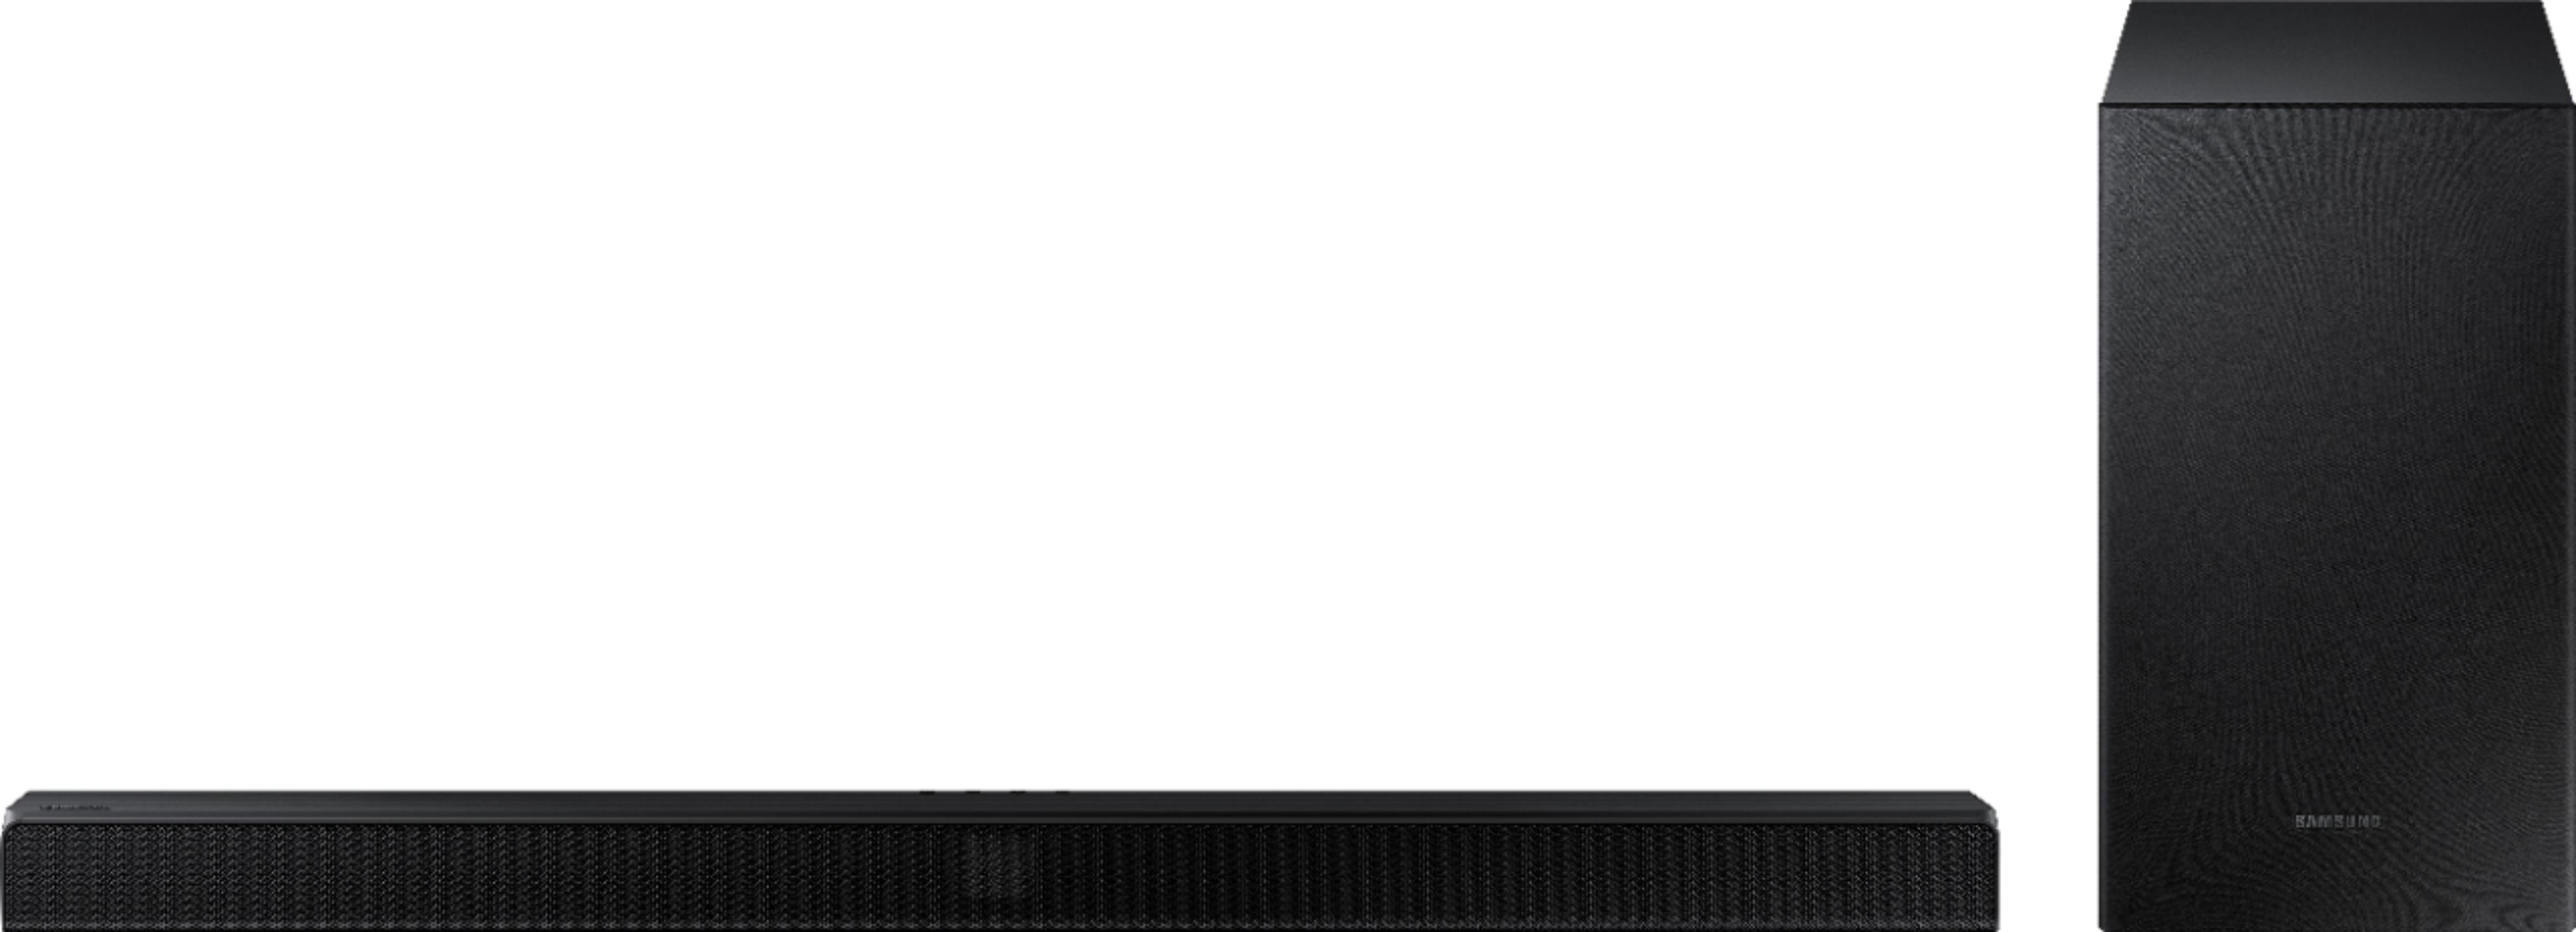 Samsung HW-T430/ZG Soundbar 2.1 Surround Sound 170 Watt Bluetooth HDMI Schwarz 